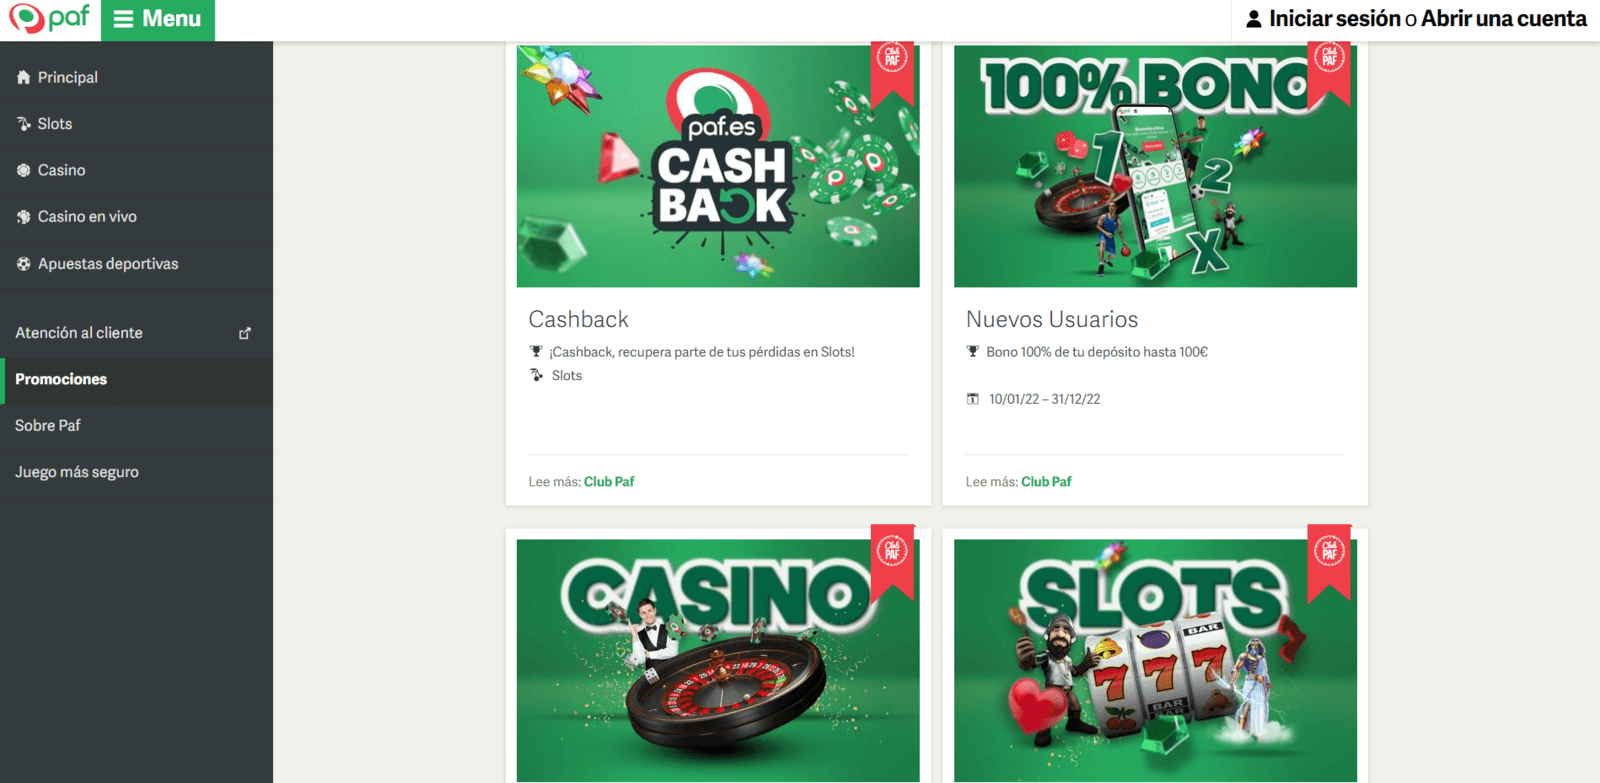 Promociones de Paf Casino online para jugar en España